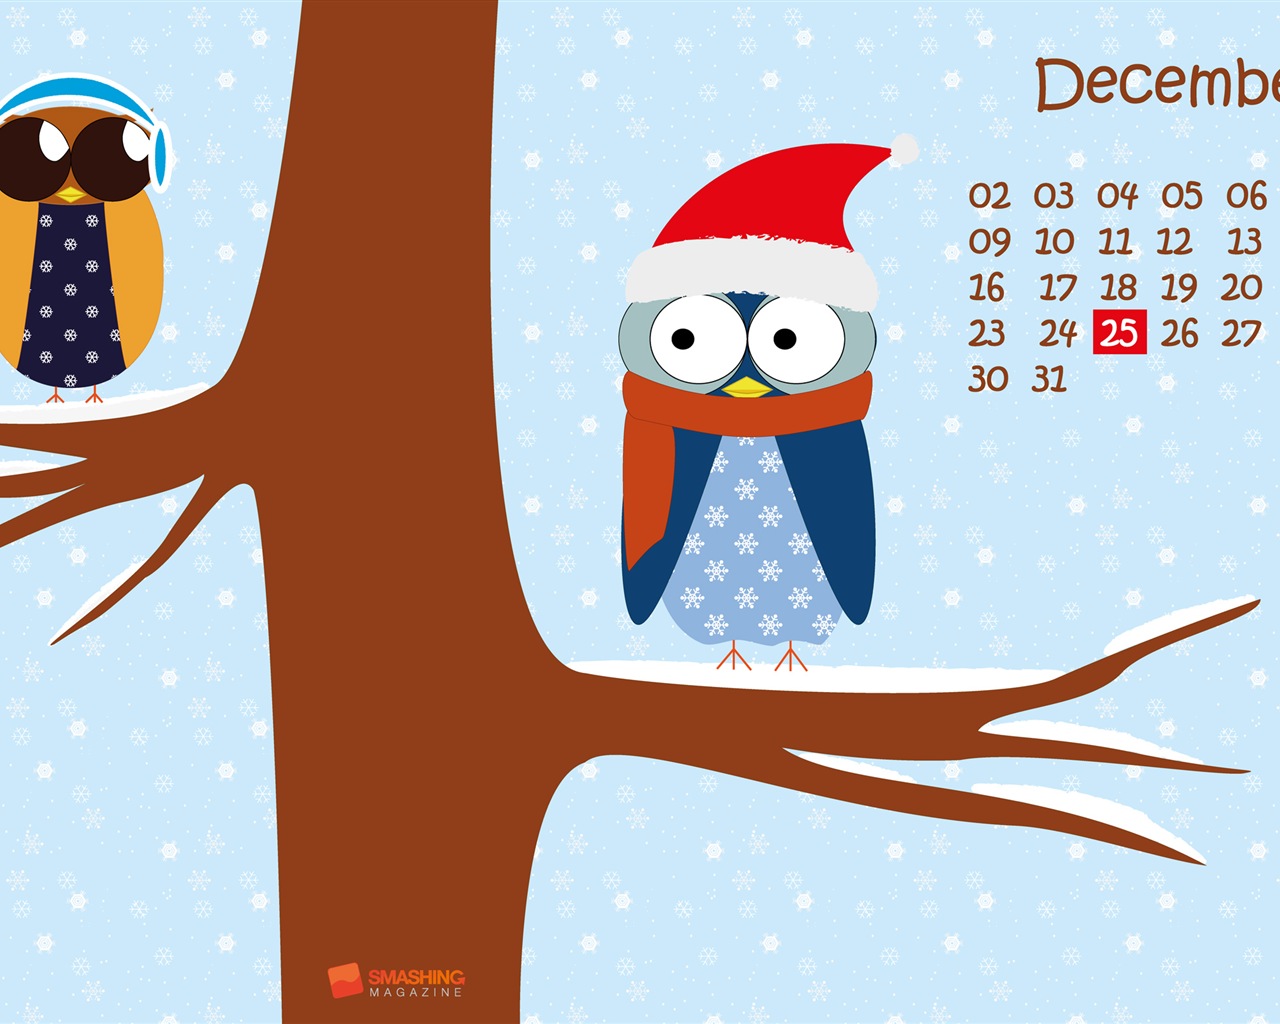 December 2013 Calendar wallpaper (2) #23 - 1280x1024